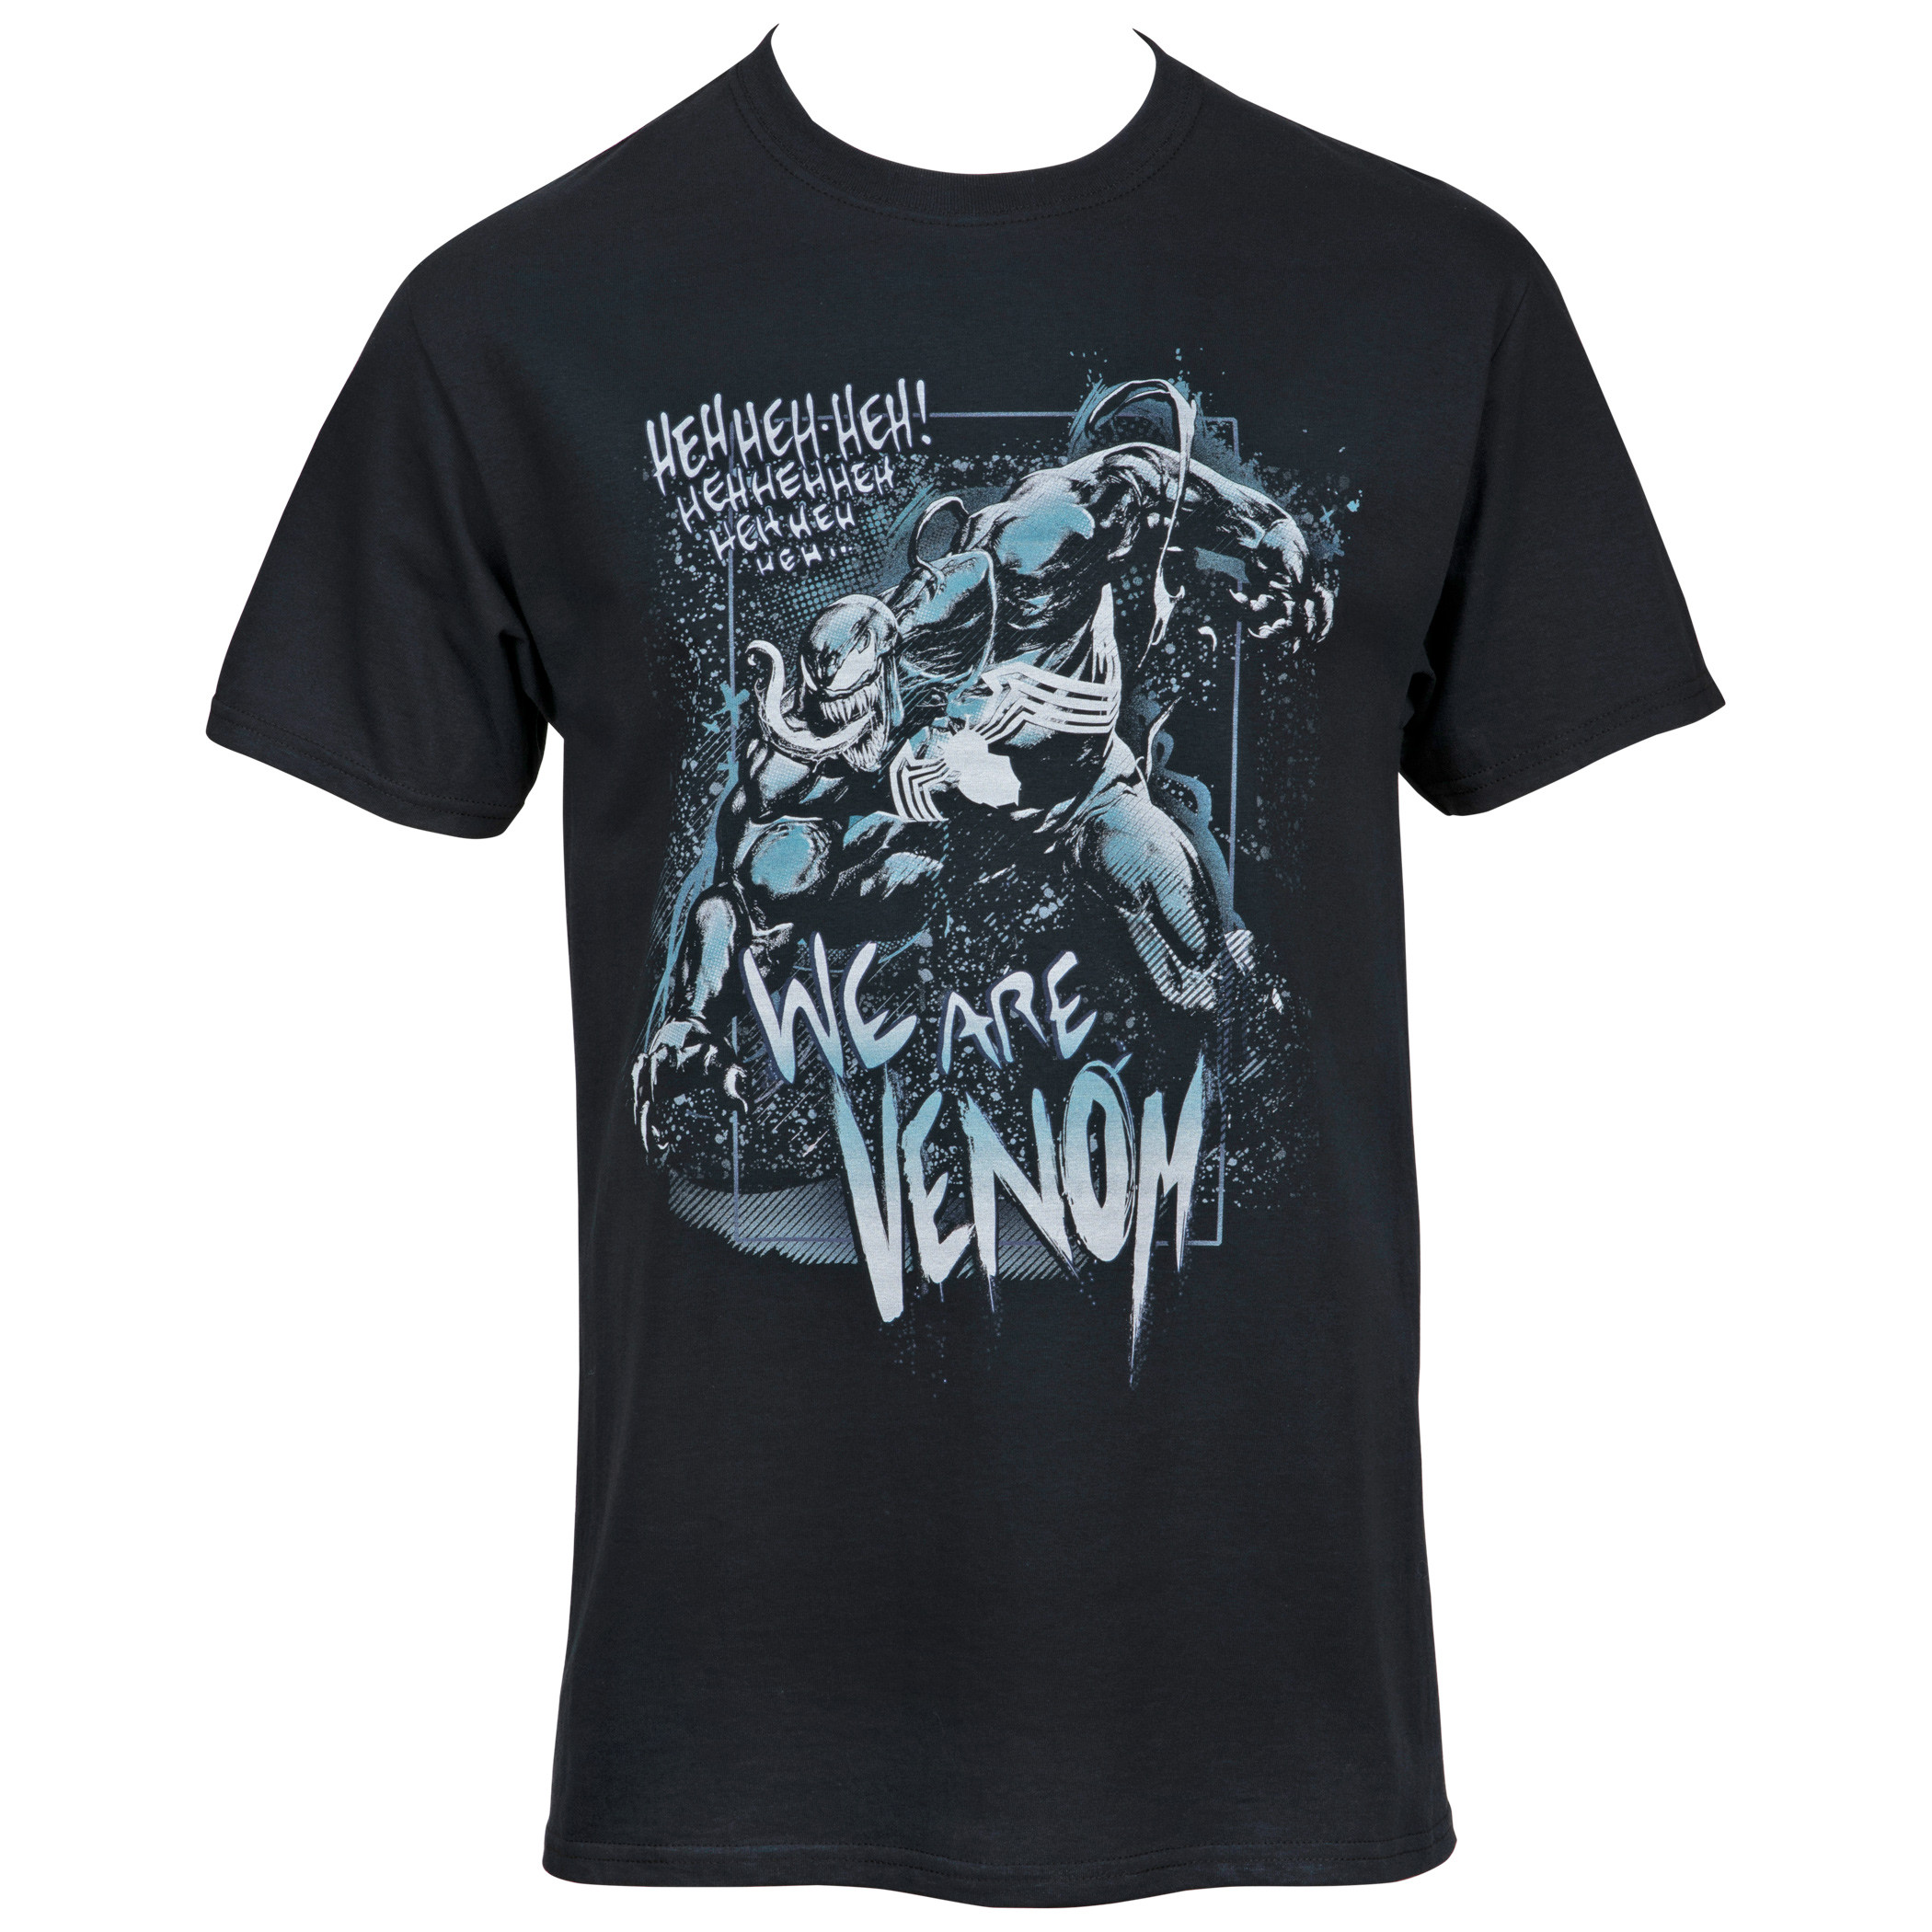 Venom Heh Heh Heh! We Are Venom T-Shirt